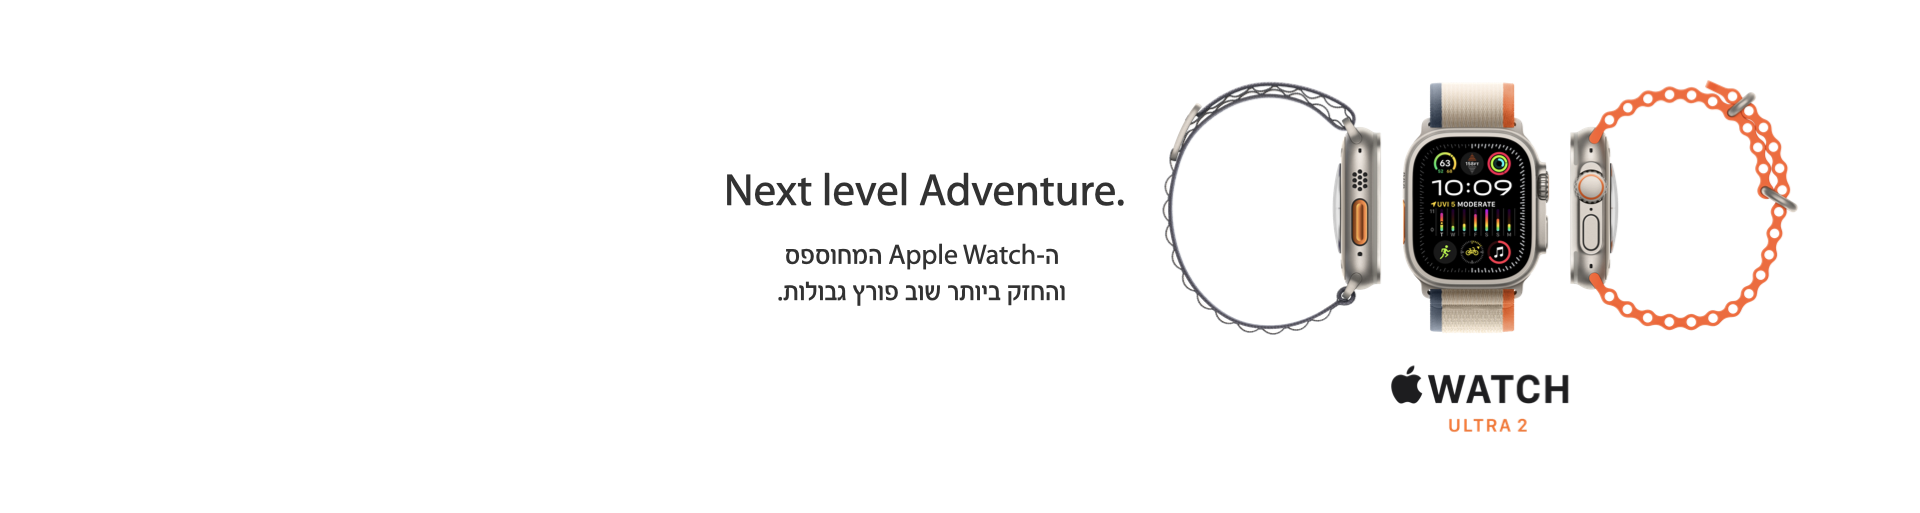 ה-Apple Watch המחוספס והחזק ביותר שוב פורץ גבולות.